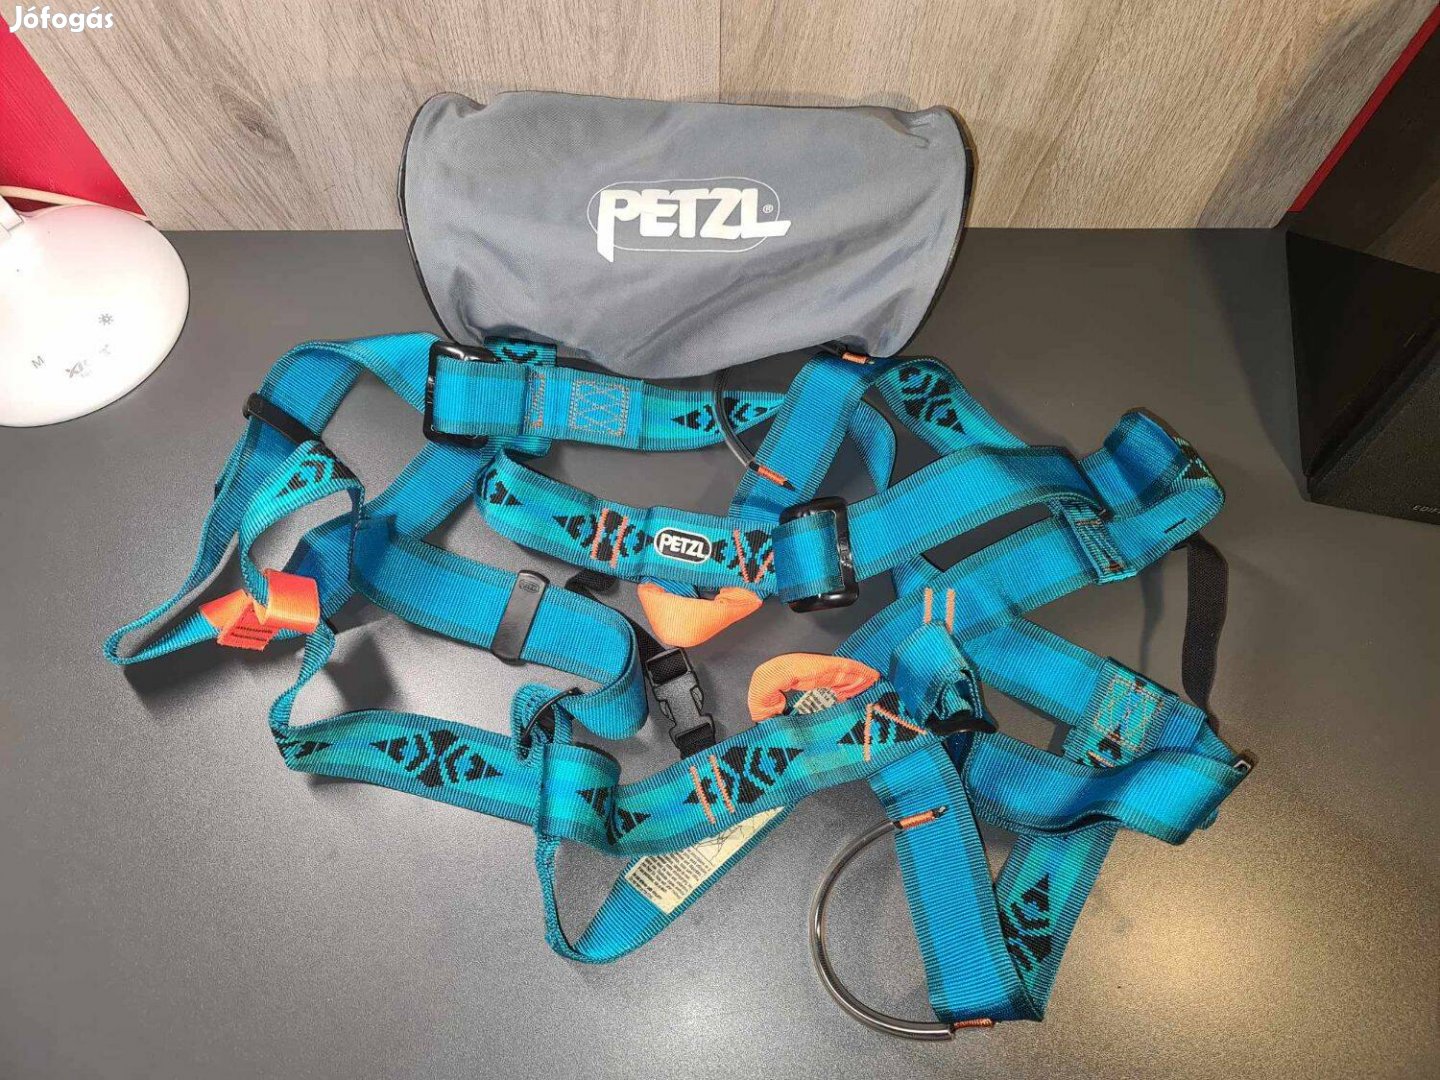 Petzl - 8003 C05 teljes-test biztonsági heveder, kék színben, Új !!!